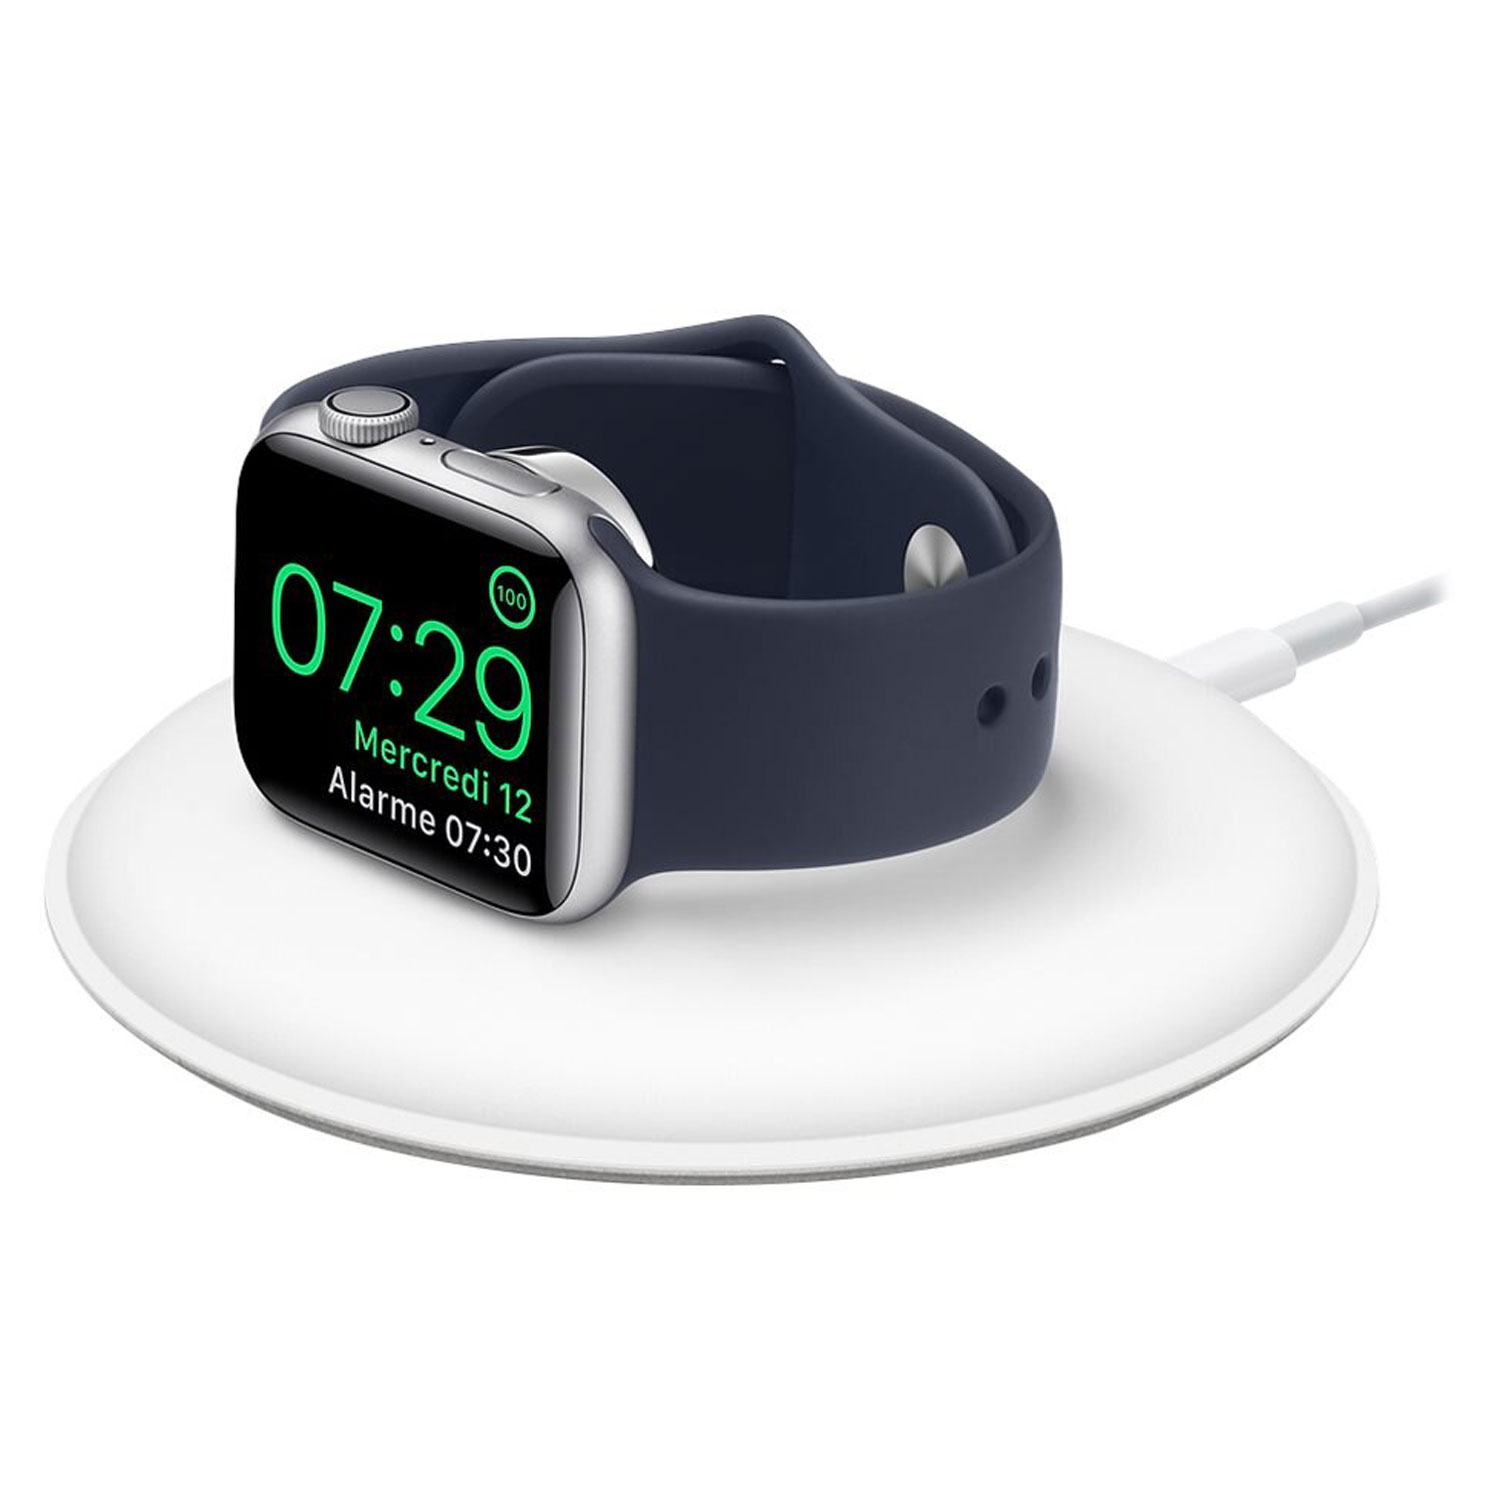 Carregador Magnético Apple Watch MU9F2AM/A Wireless - Branco
